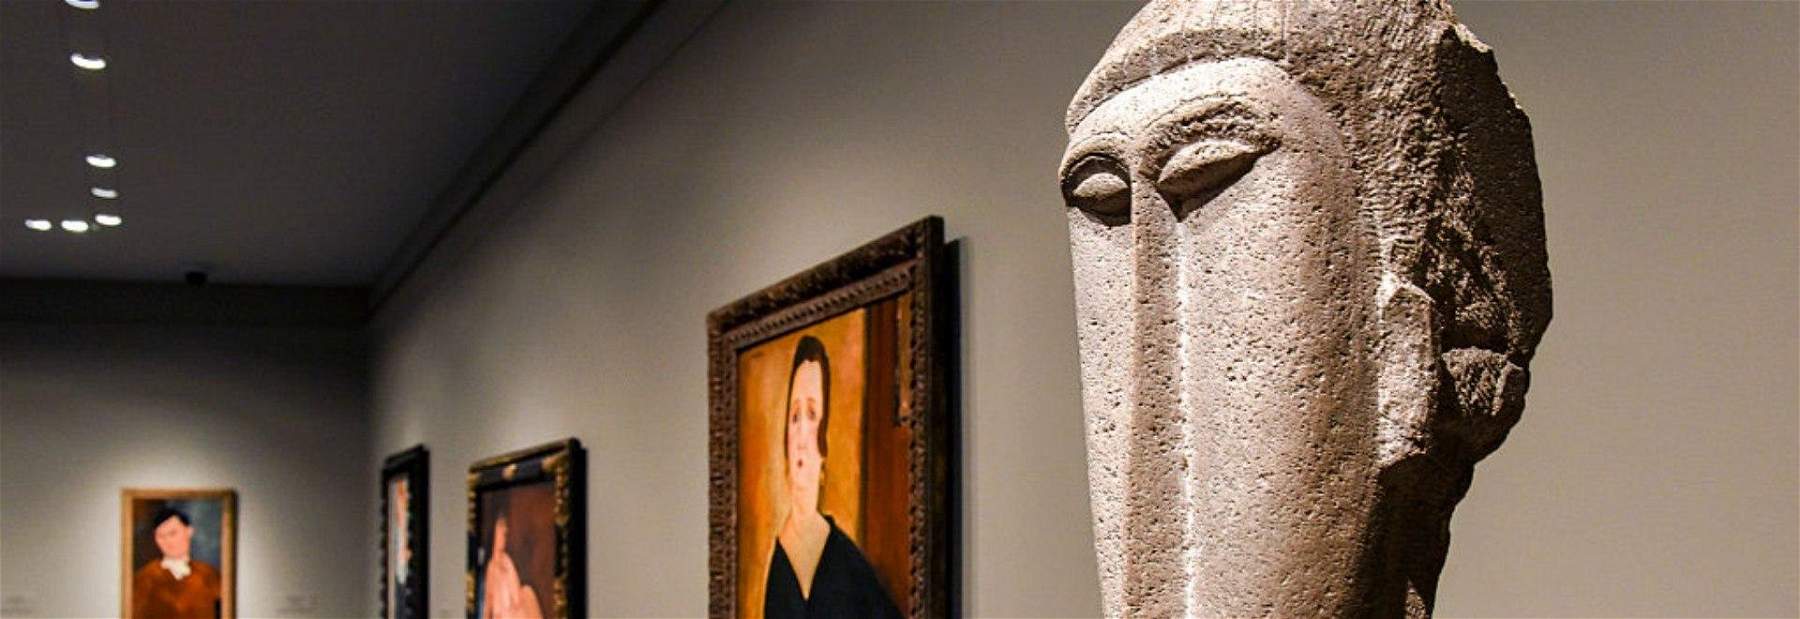 L'art à la télévision du 8 au 14 novembre : Modigliani, Matisse et Léonard de Vinci